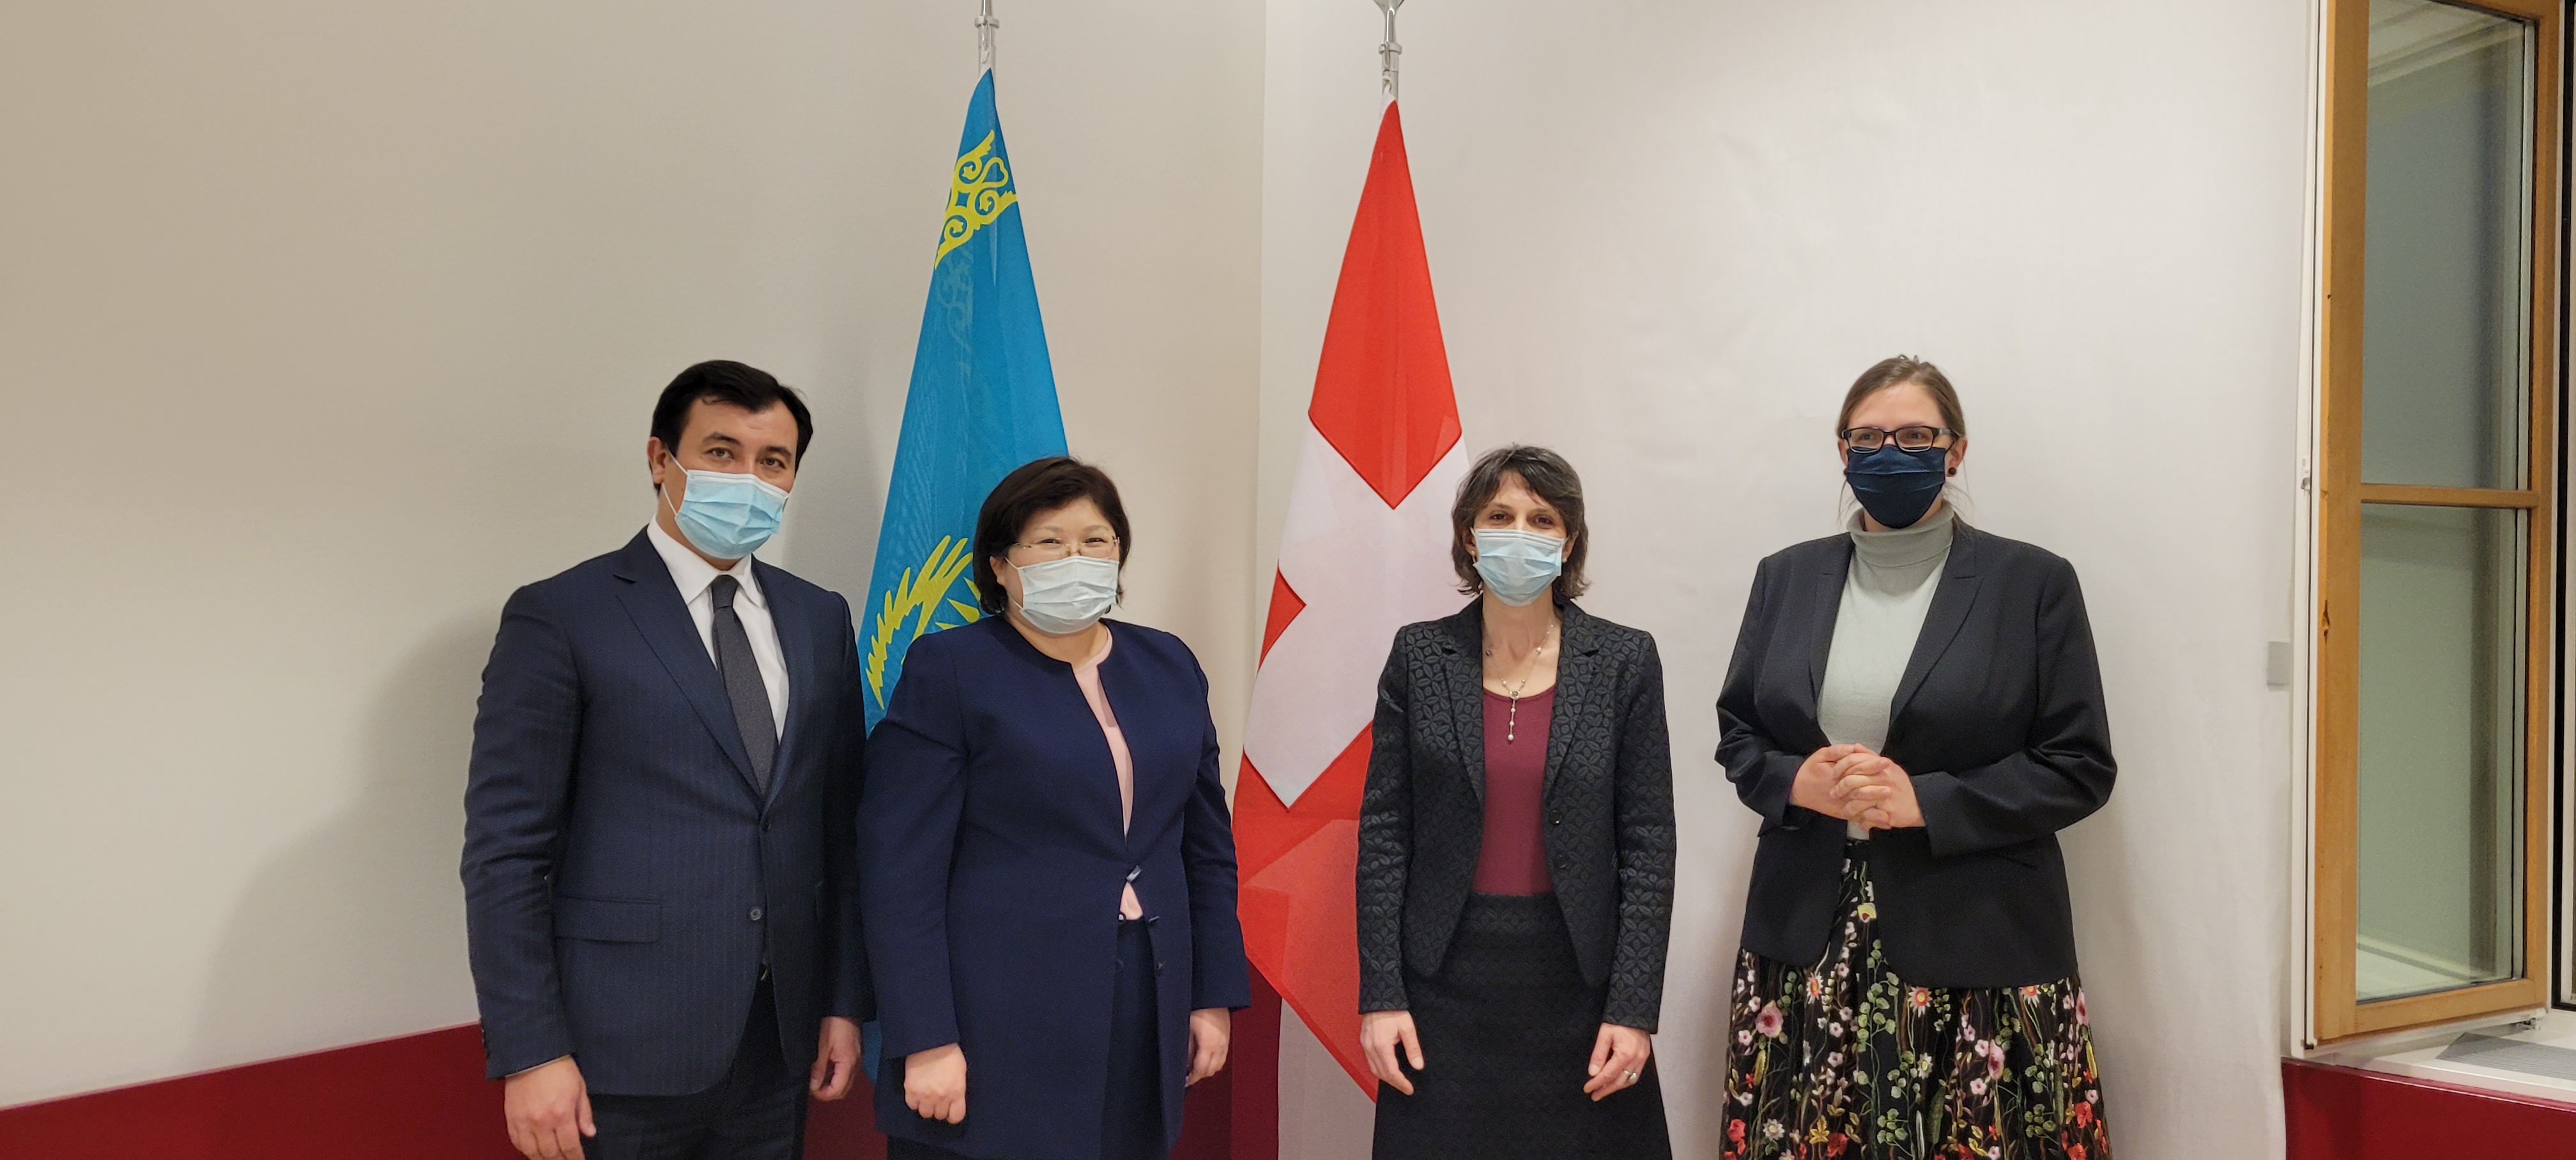 Уполномоченный по правам человека Казахстана Эльвира Азимова посетила с визитом Швейцарию